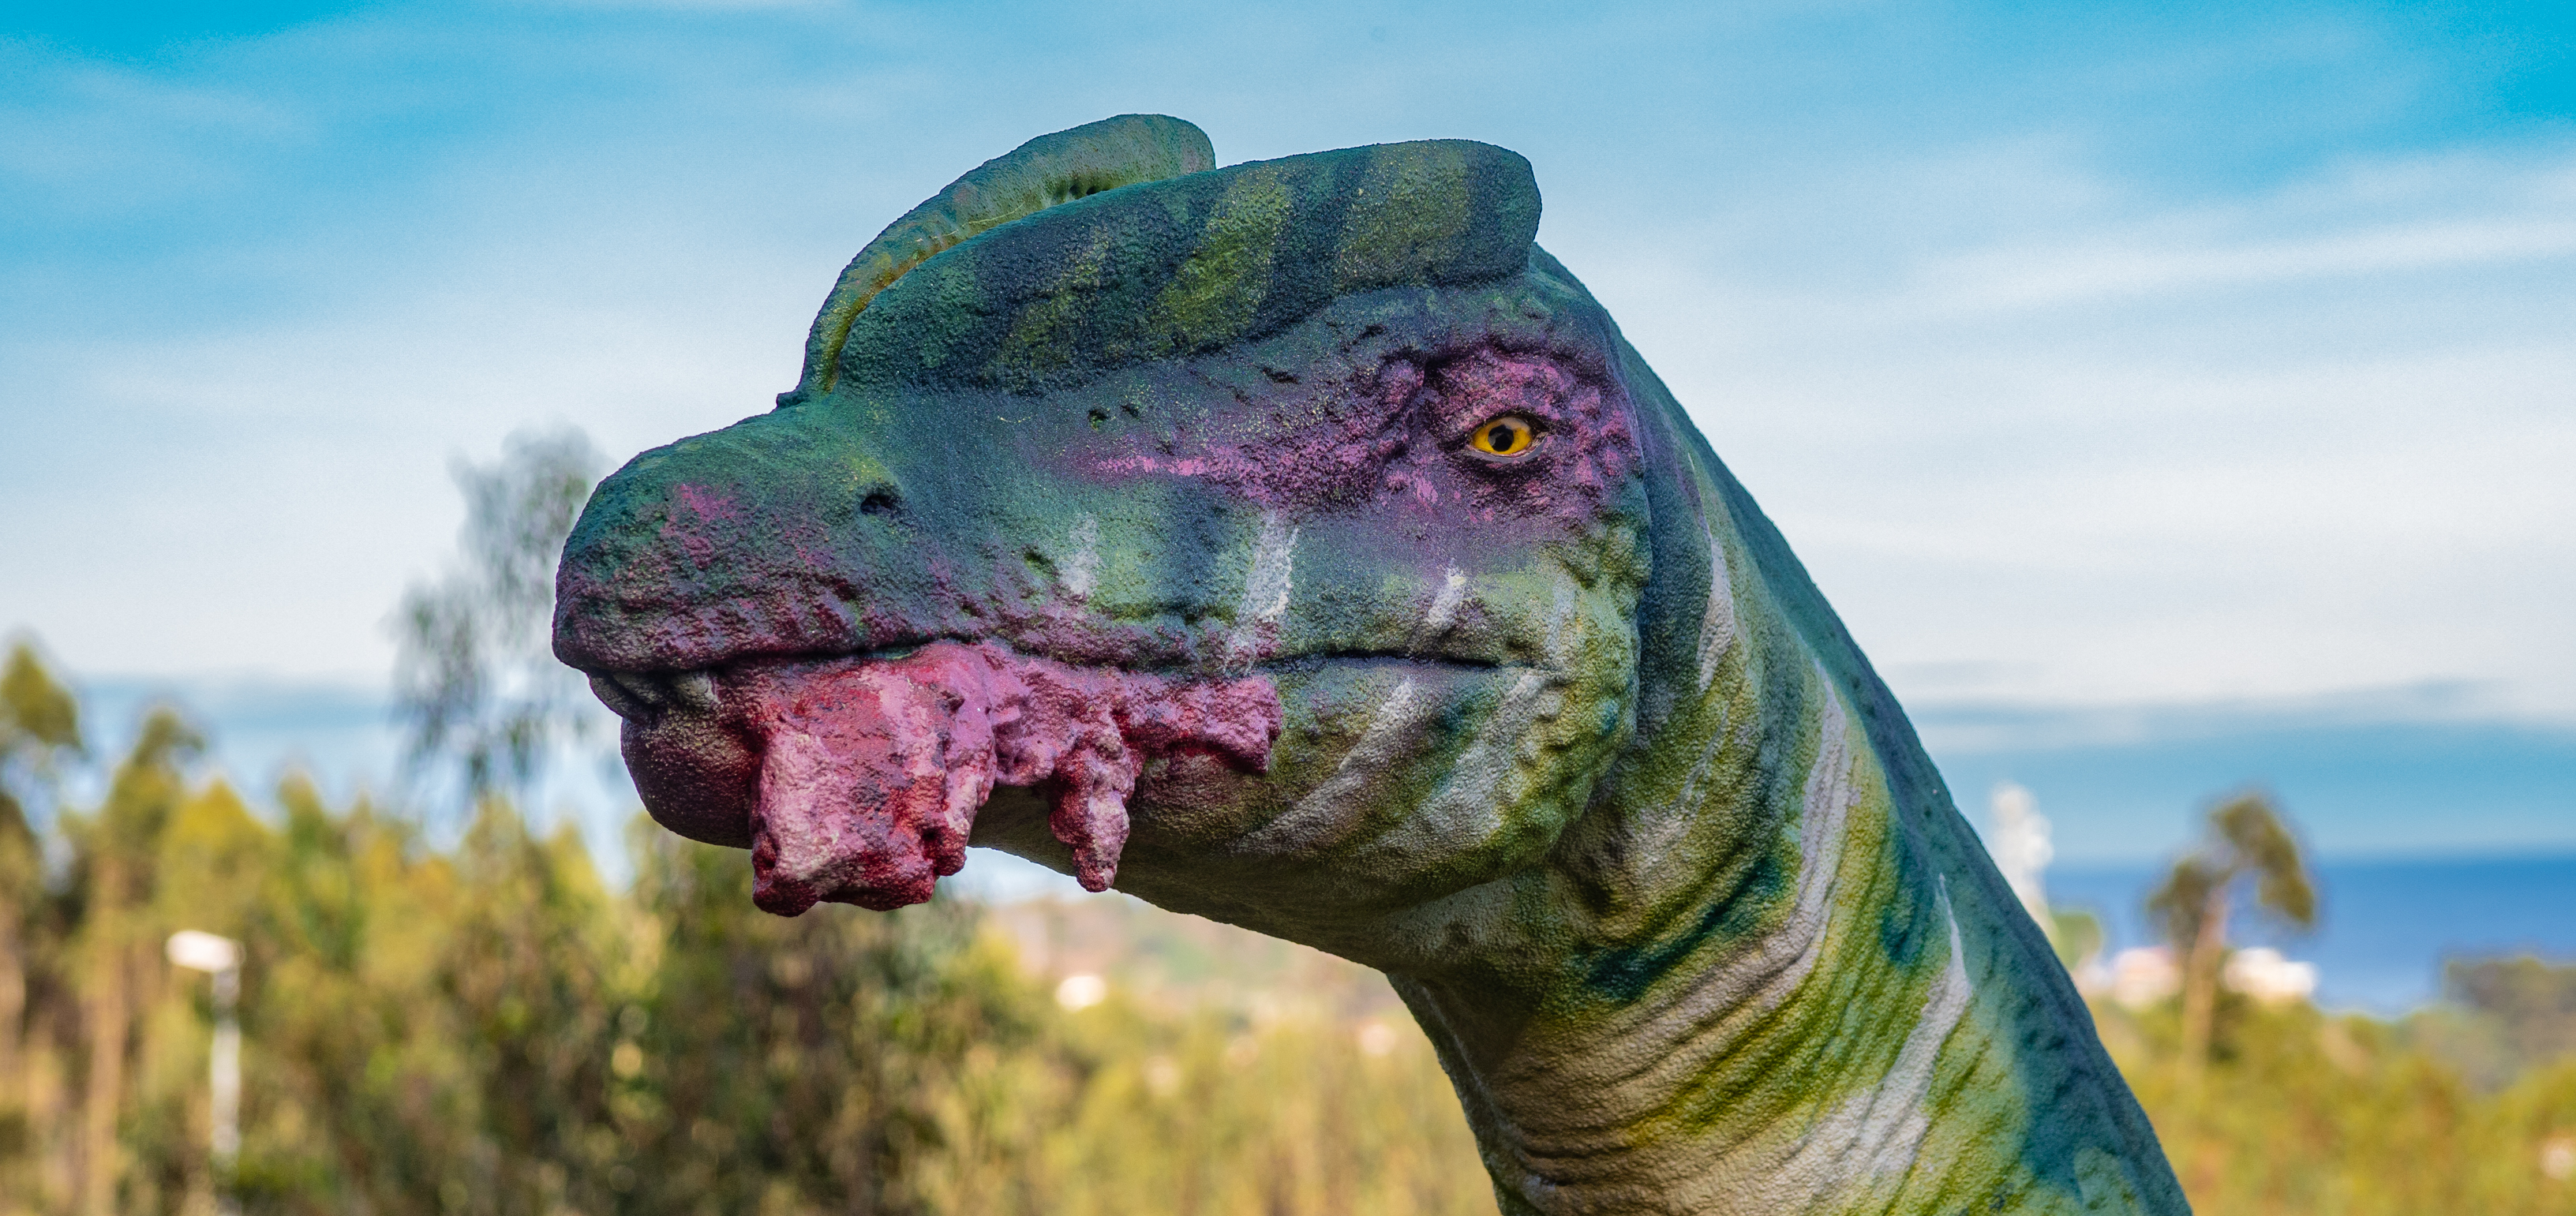 Detalle de la cabeza del dinosaurio Liliensternus. Tiene manchas rayadas verdes, una cresta, la mirada afilada y un pedazo de carne en la boca.